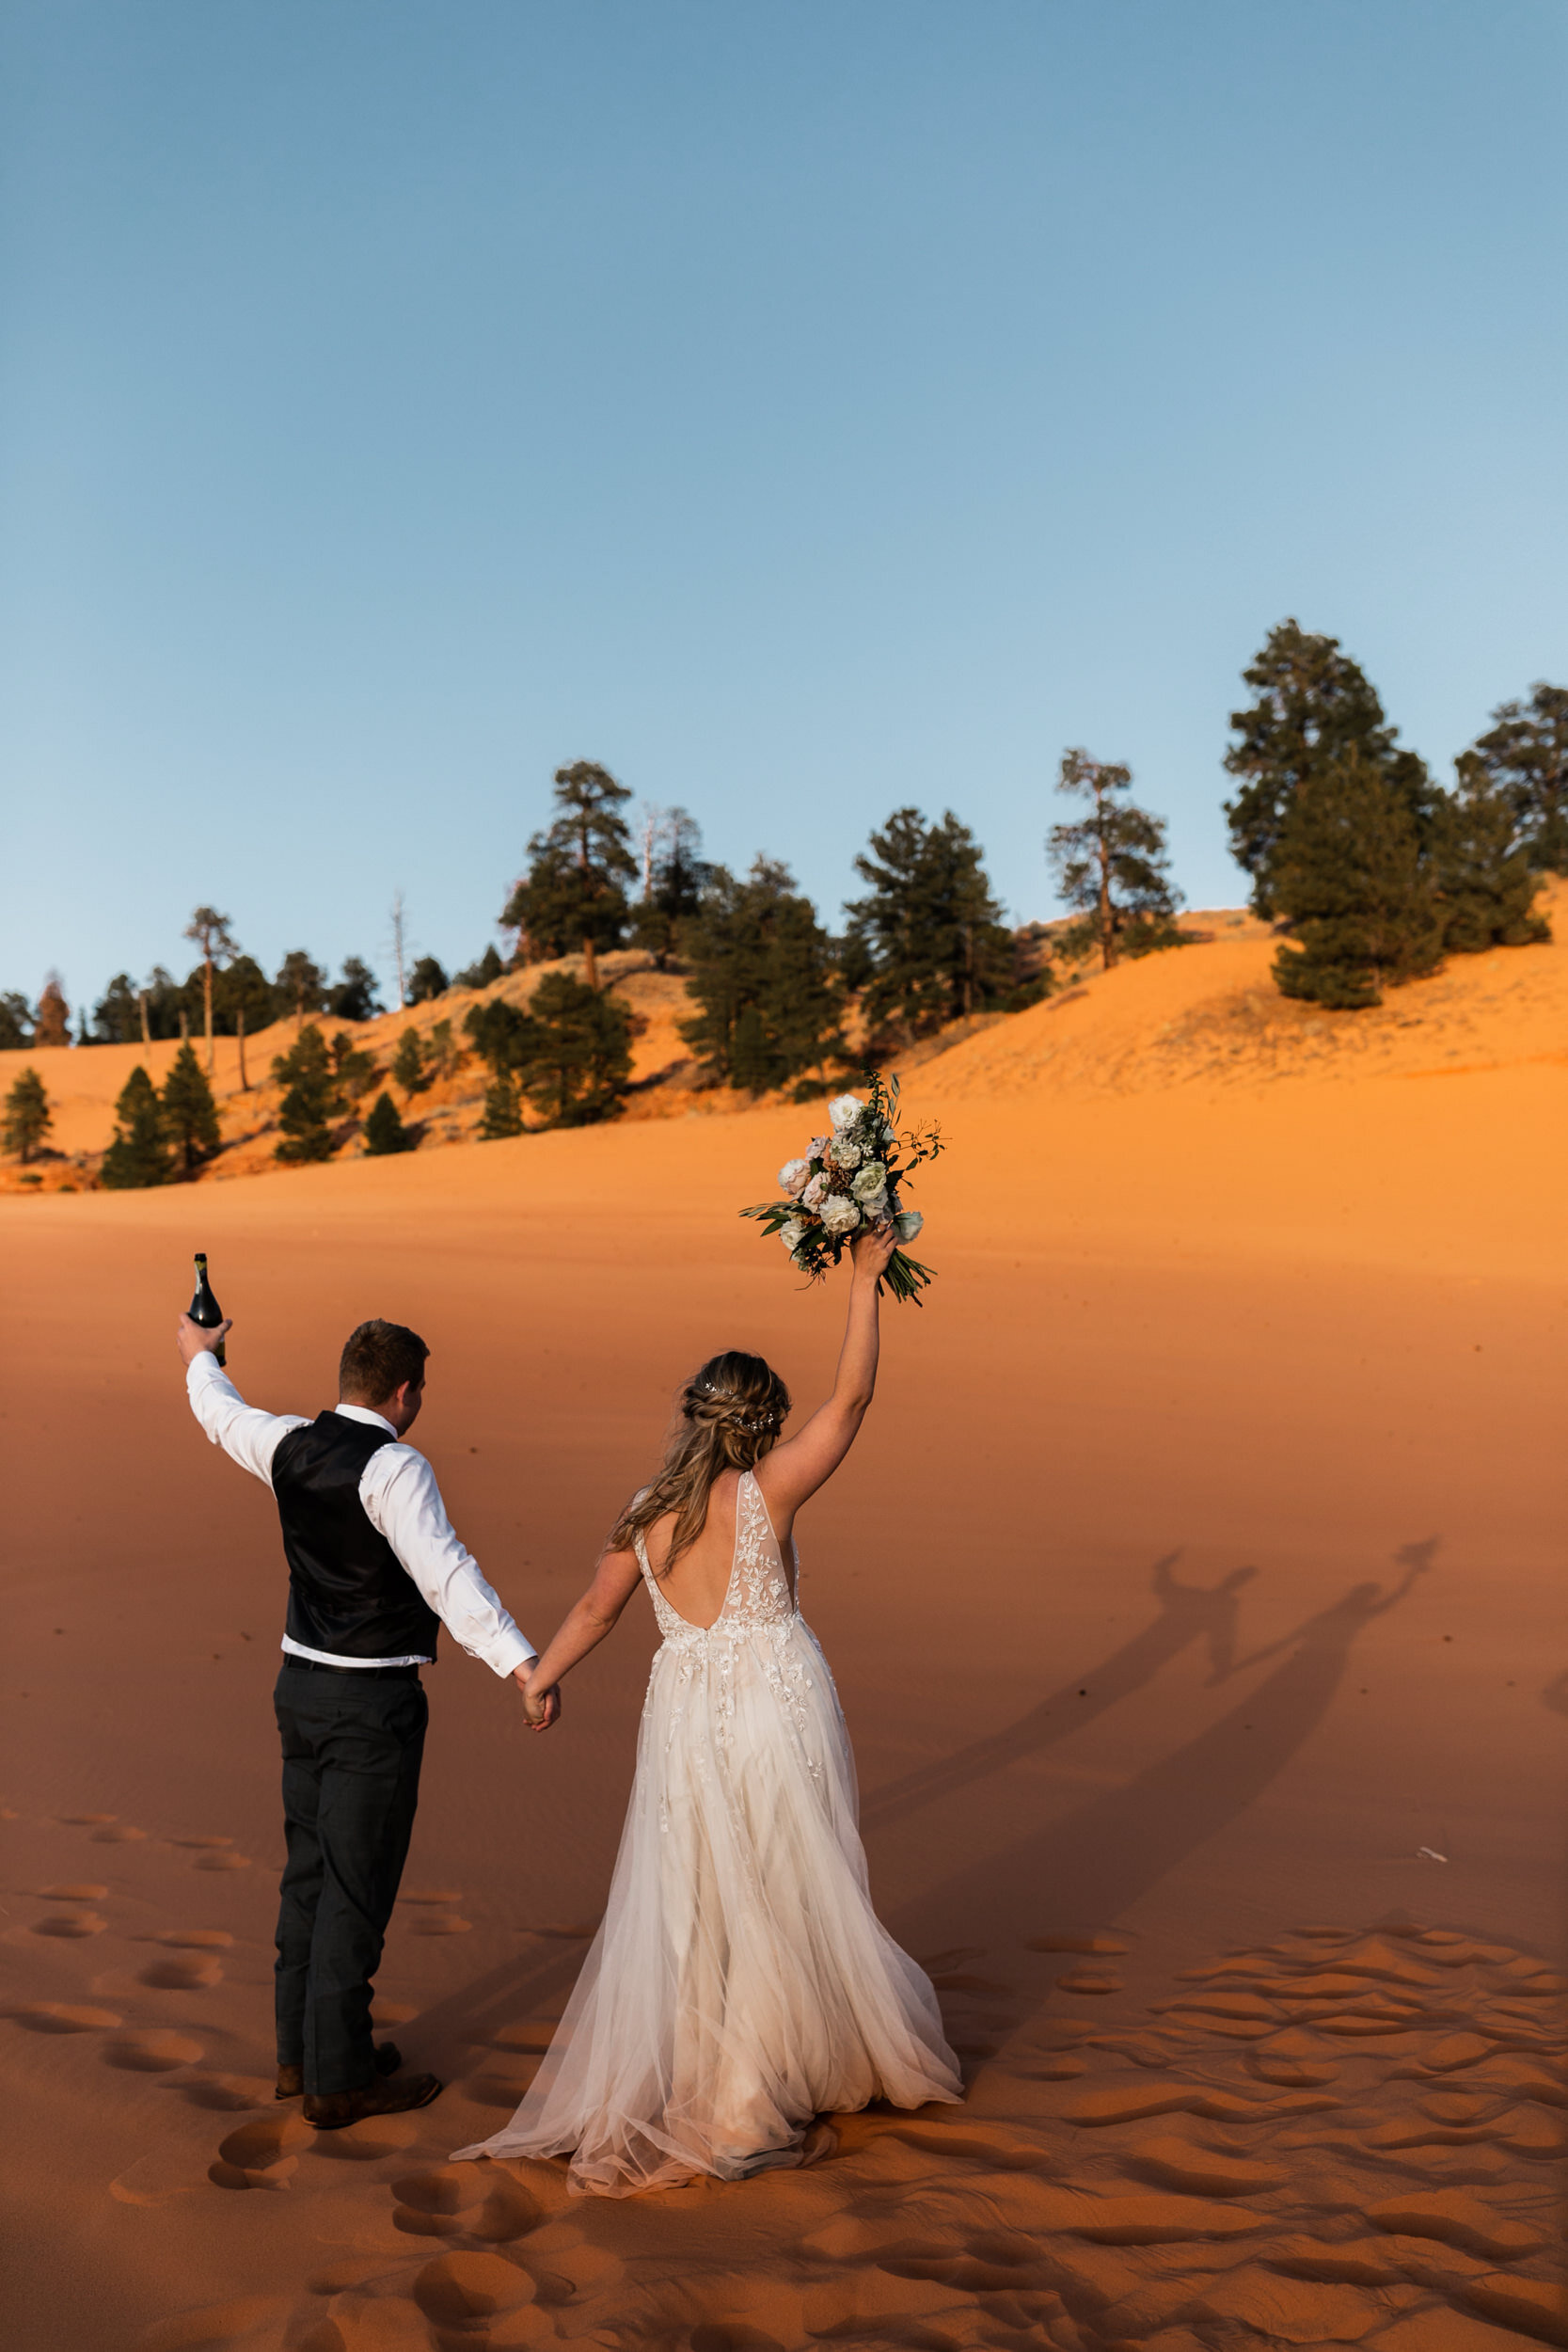 Utah Elopement | Adventurous Wedding in Sand Dunes | The Hearnes Photography